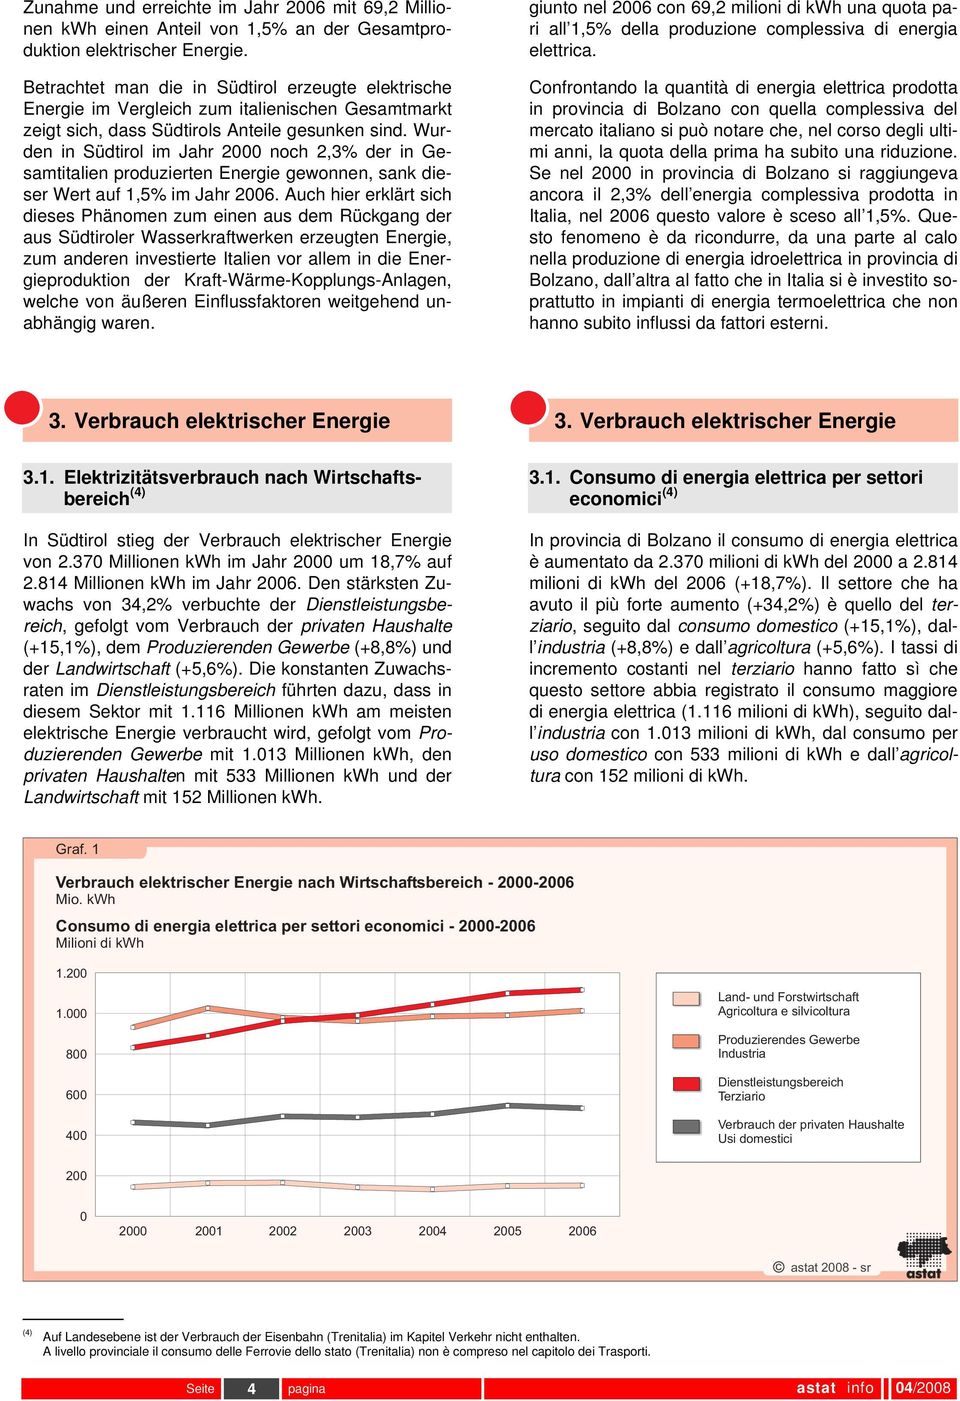 Wurden in Südtirol im Jahr 2000 noch 2,3% der in Gesamtitalien produzierten Energie gewonnen, sank dieser Wert auf 1,5% im Jahr 2006.